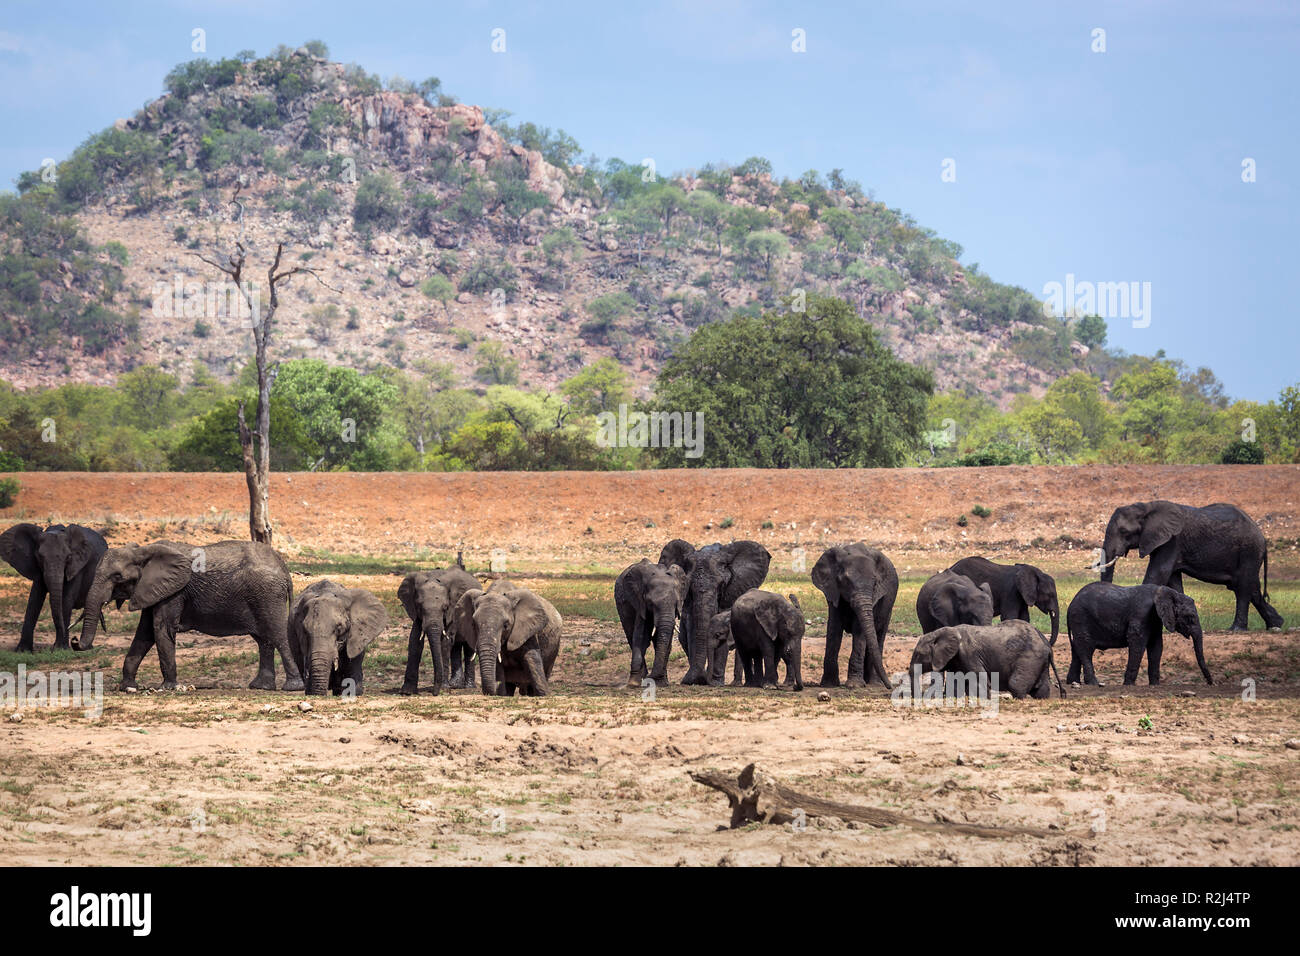 Bush africain elephant troupeau dans un paysage du parc national Kruger, Afrique du Sud ; espèce de la famille des Elephantidae Loxodonta africana Banque D'Images